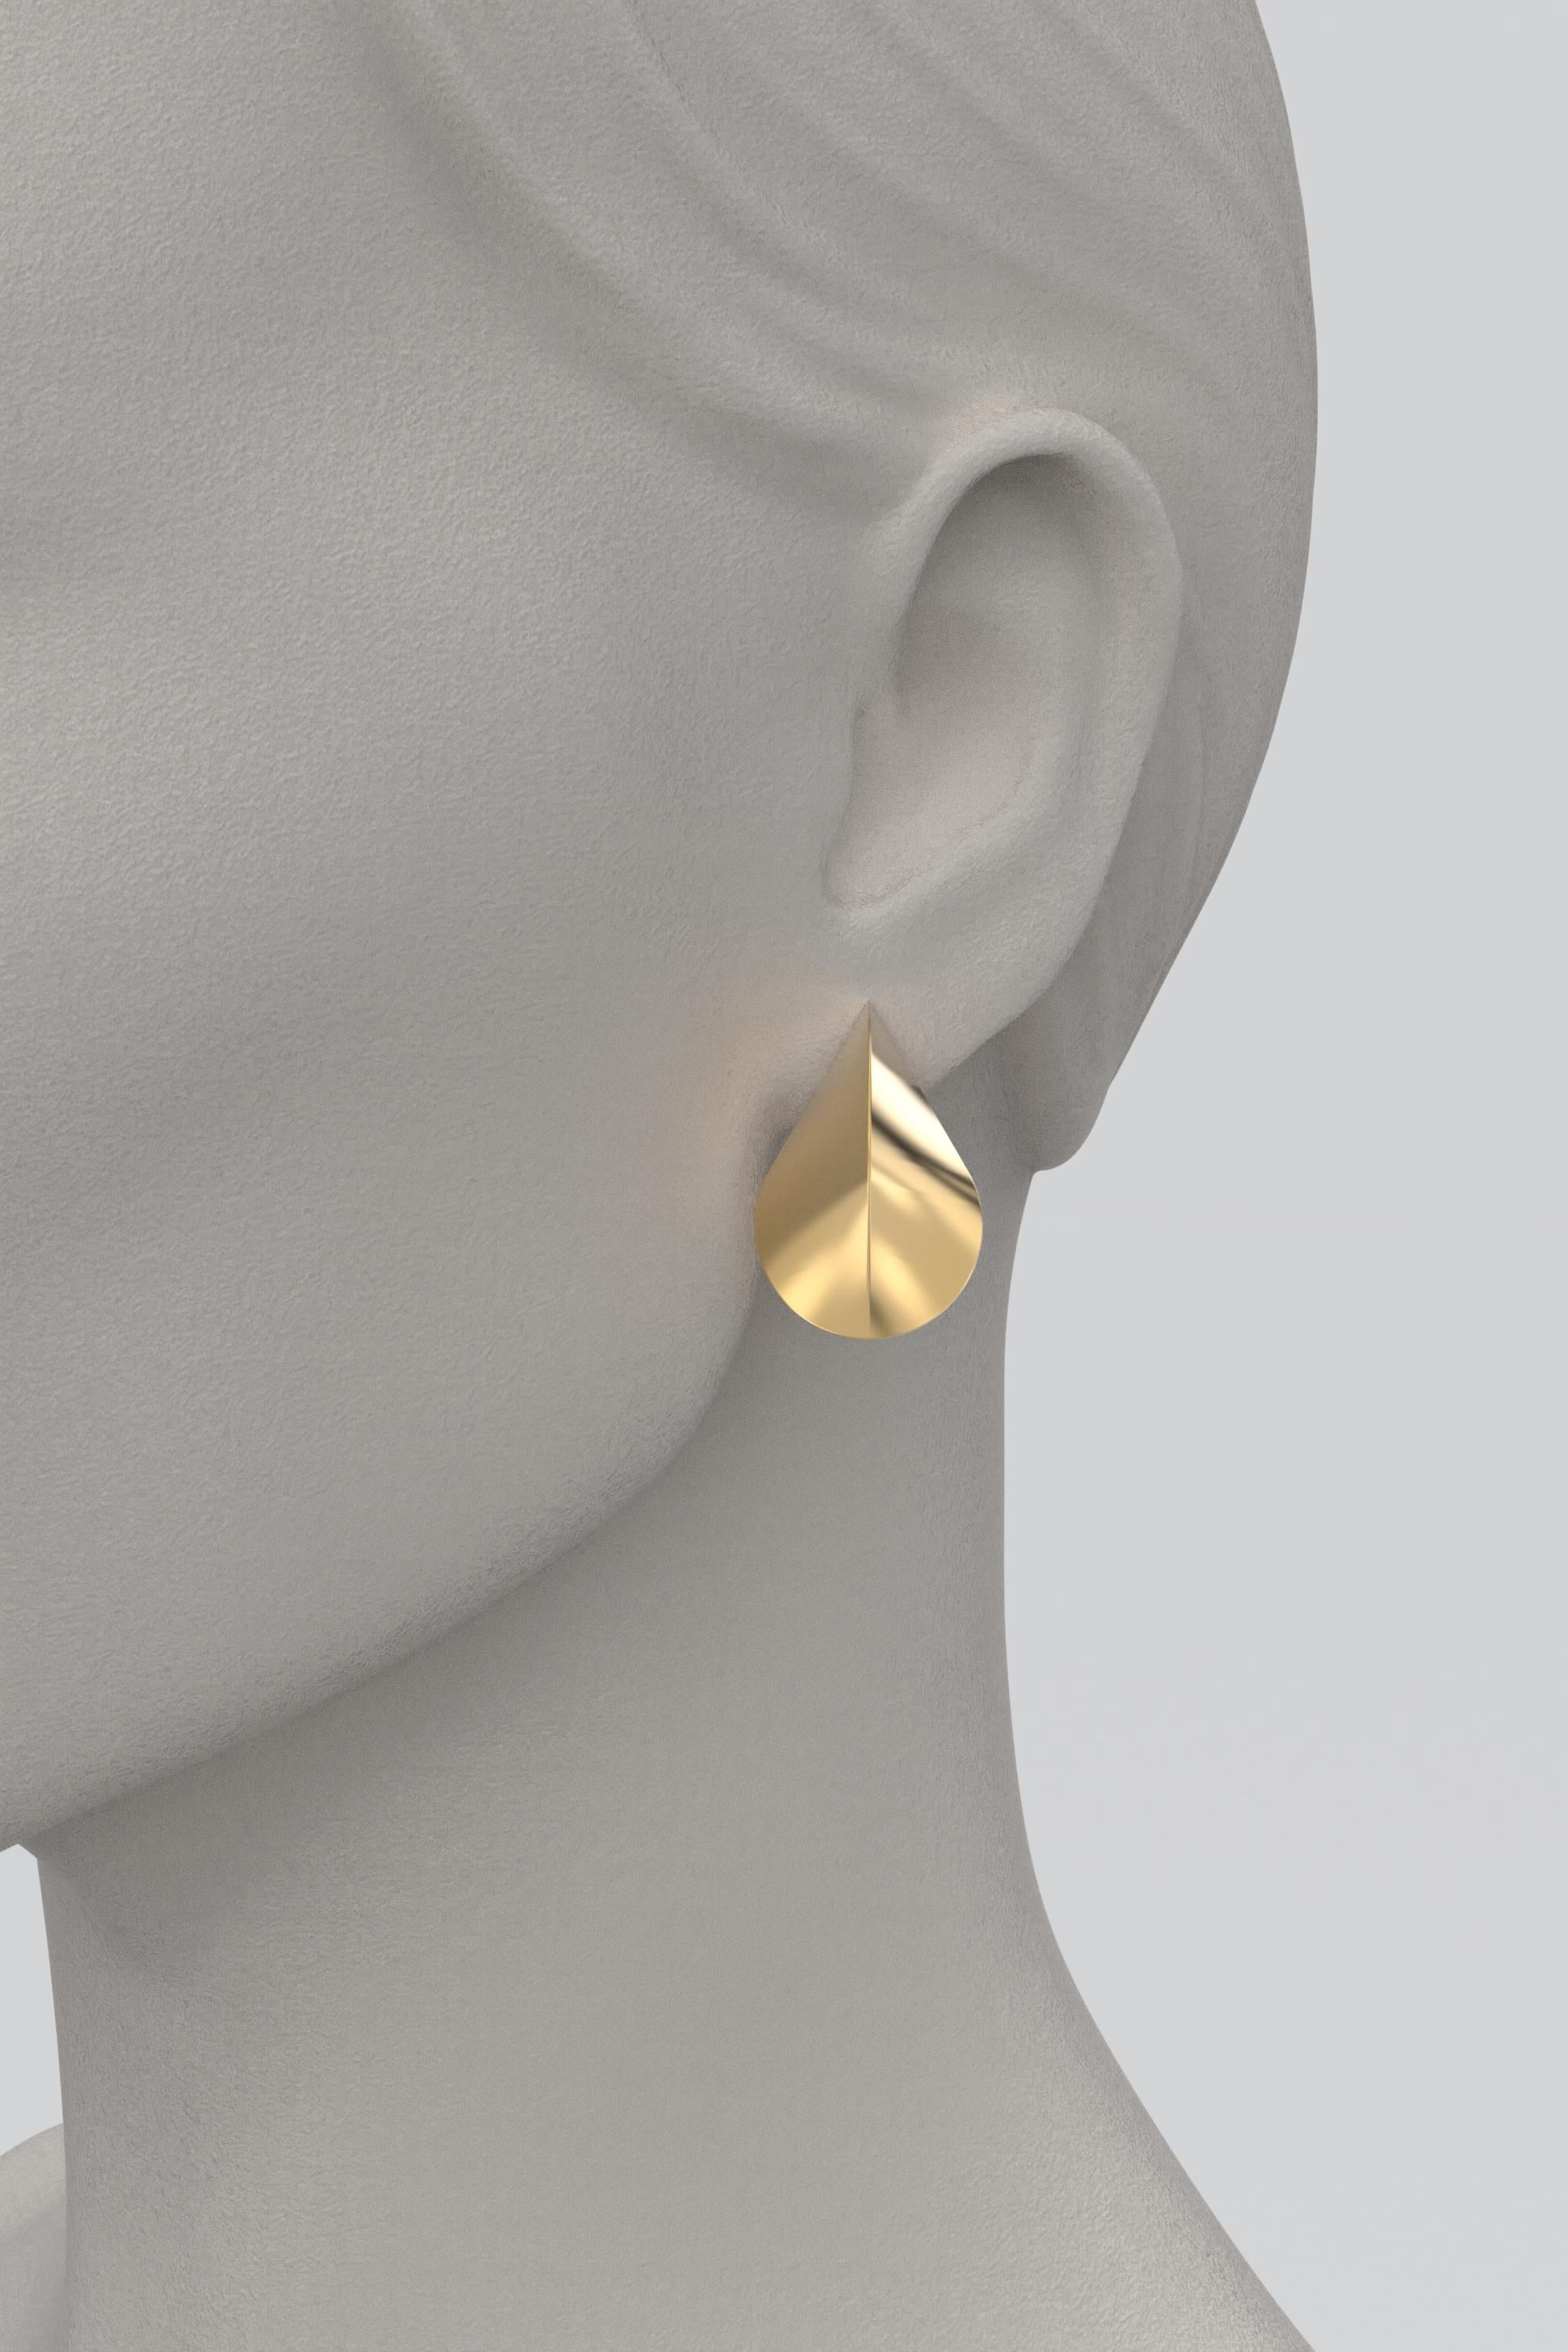 Women's Italian 14k Gold Earrings, Modern Elegant Earrings by Oltremare Gioielli For Sale